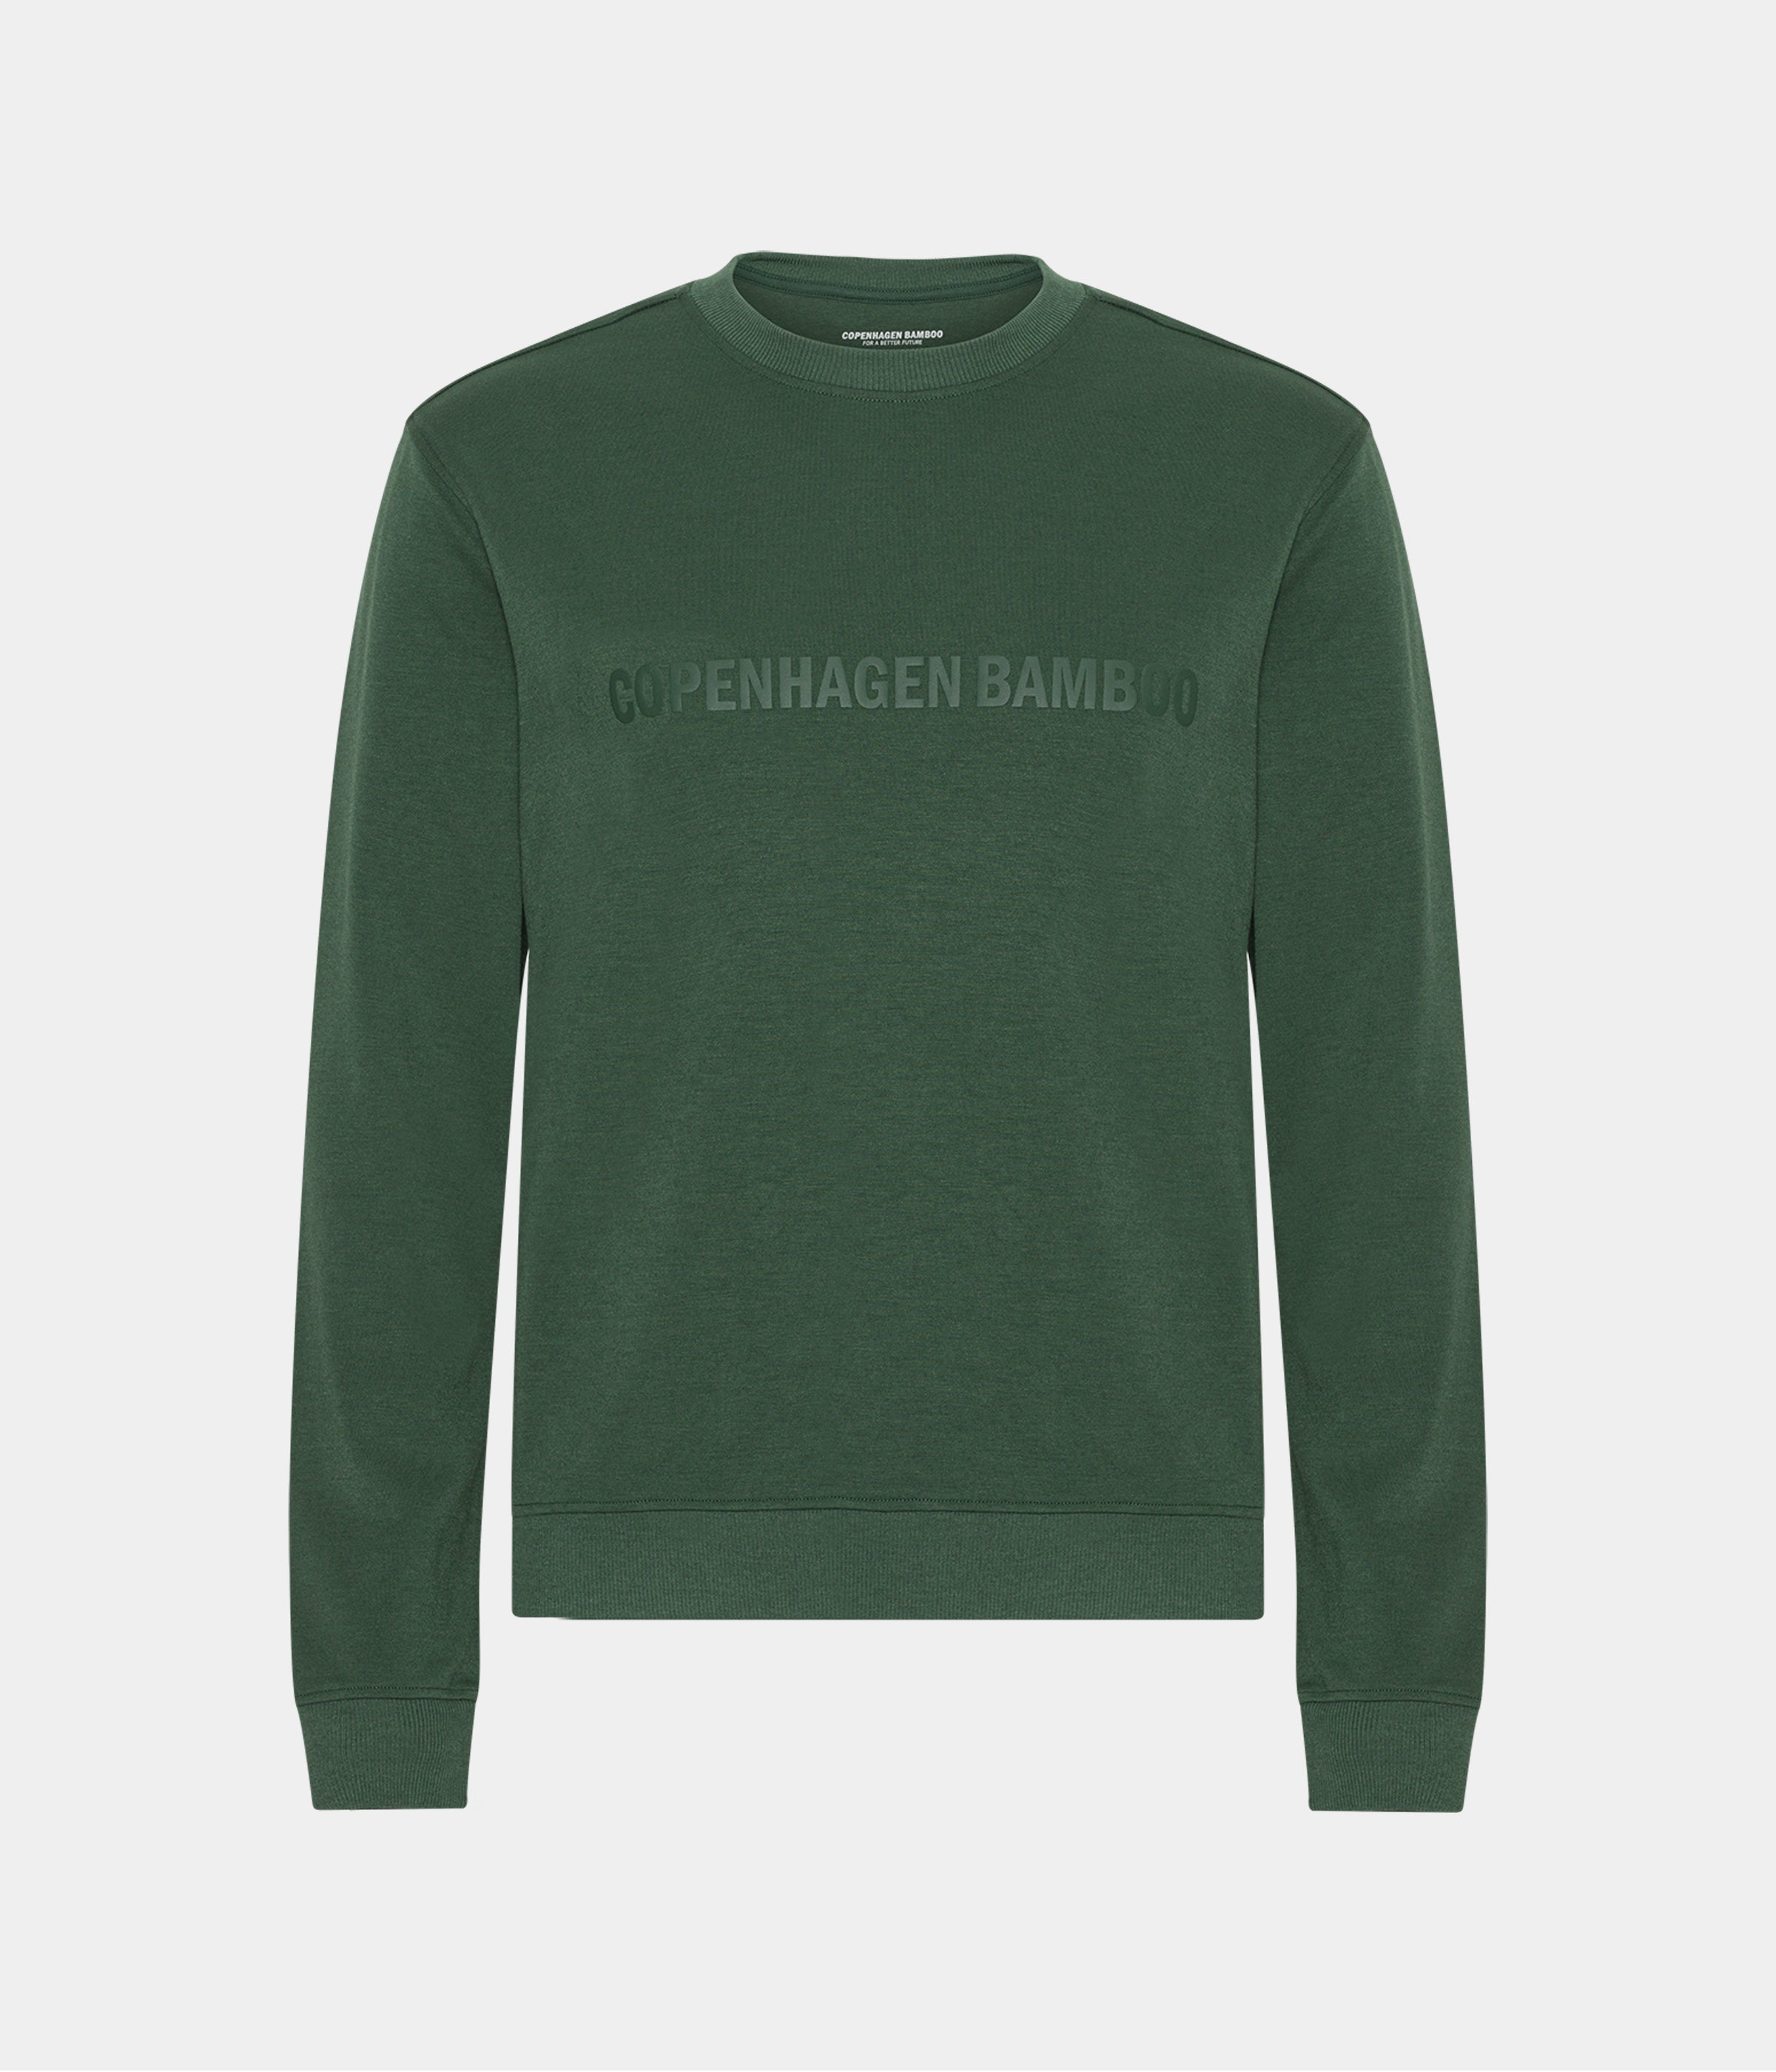 Billede af Grøn bambus sweatshirt til mænd med logo fra Copenhagen Bamboo, L hos Copenhagen Bamboo